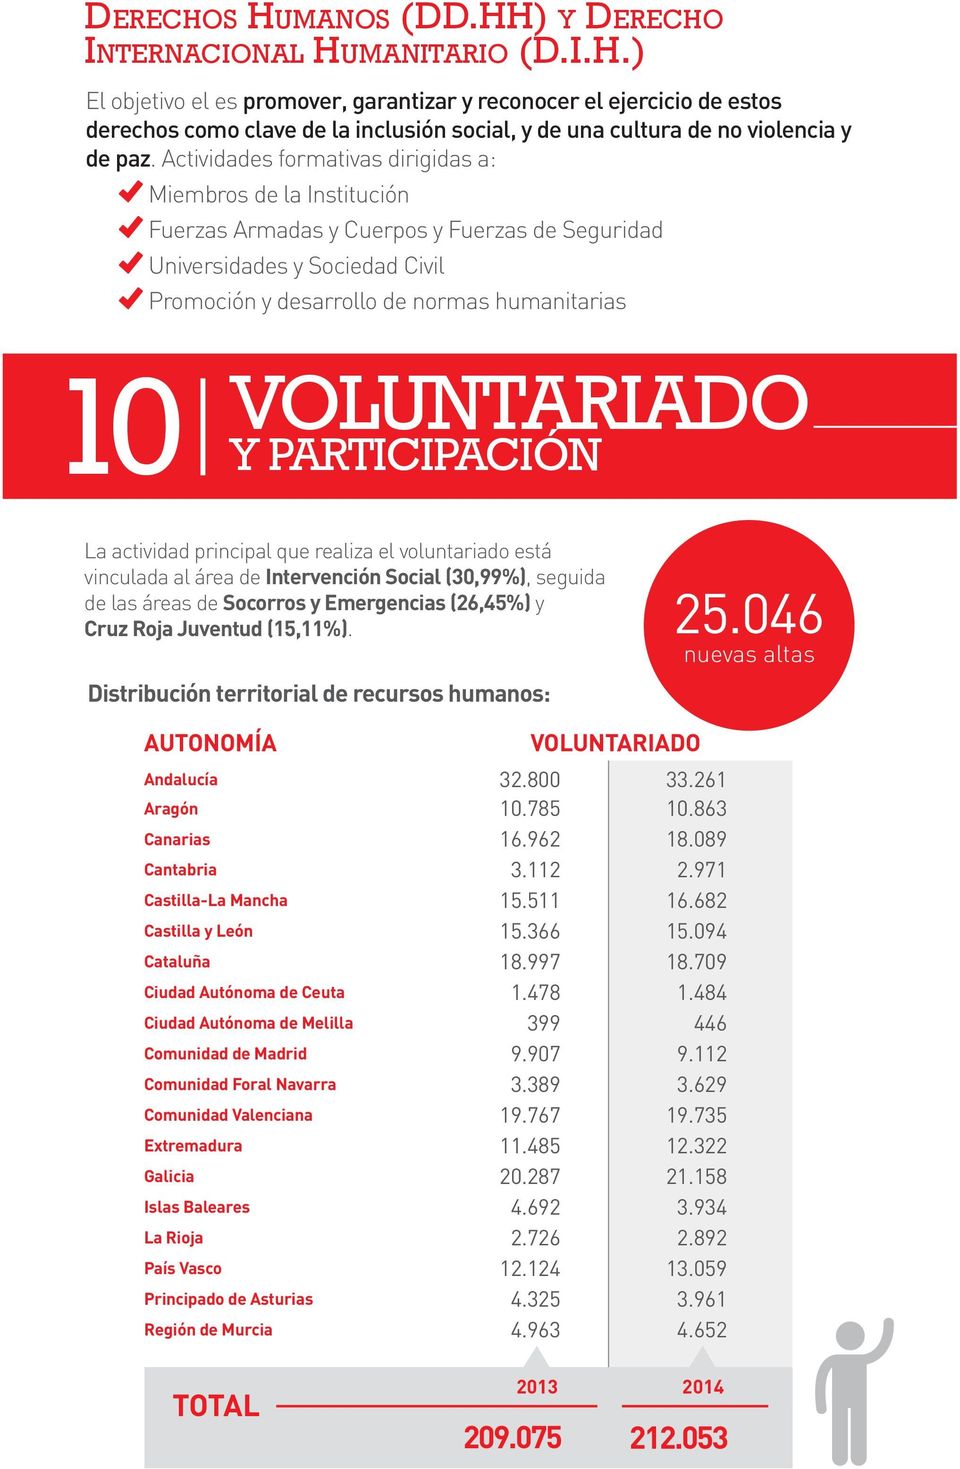 VOLUNTARIADO Y PARTICIPACIÓN La actividad principal que realiza el voluntariado está vinculada al área de Intervención Social (30,99%), seguida de las áreas de Socorros y Emergencias (26,45%) y Cruz